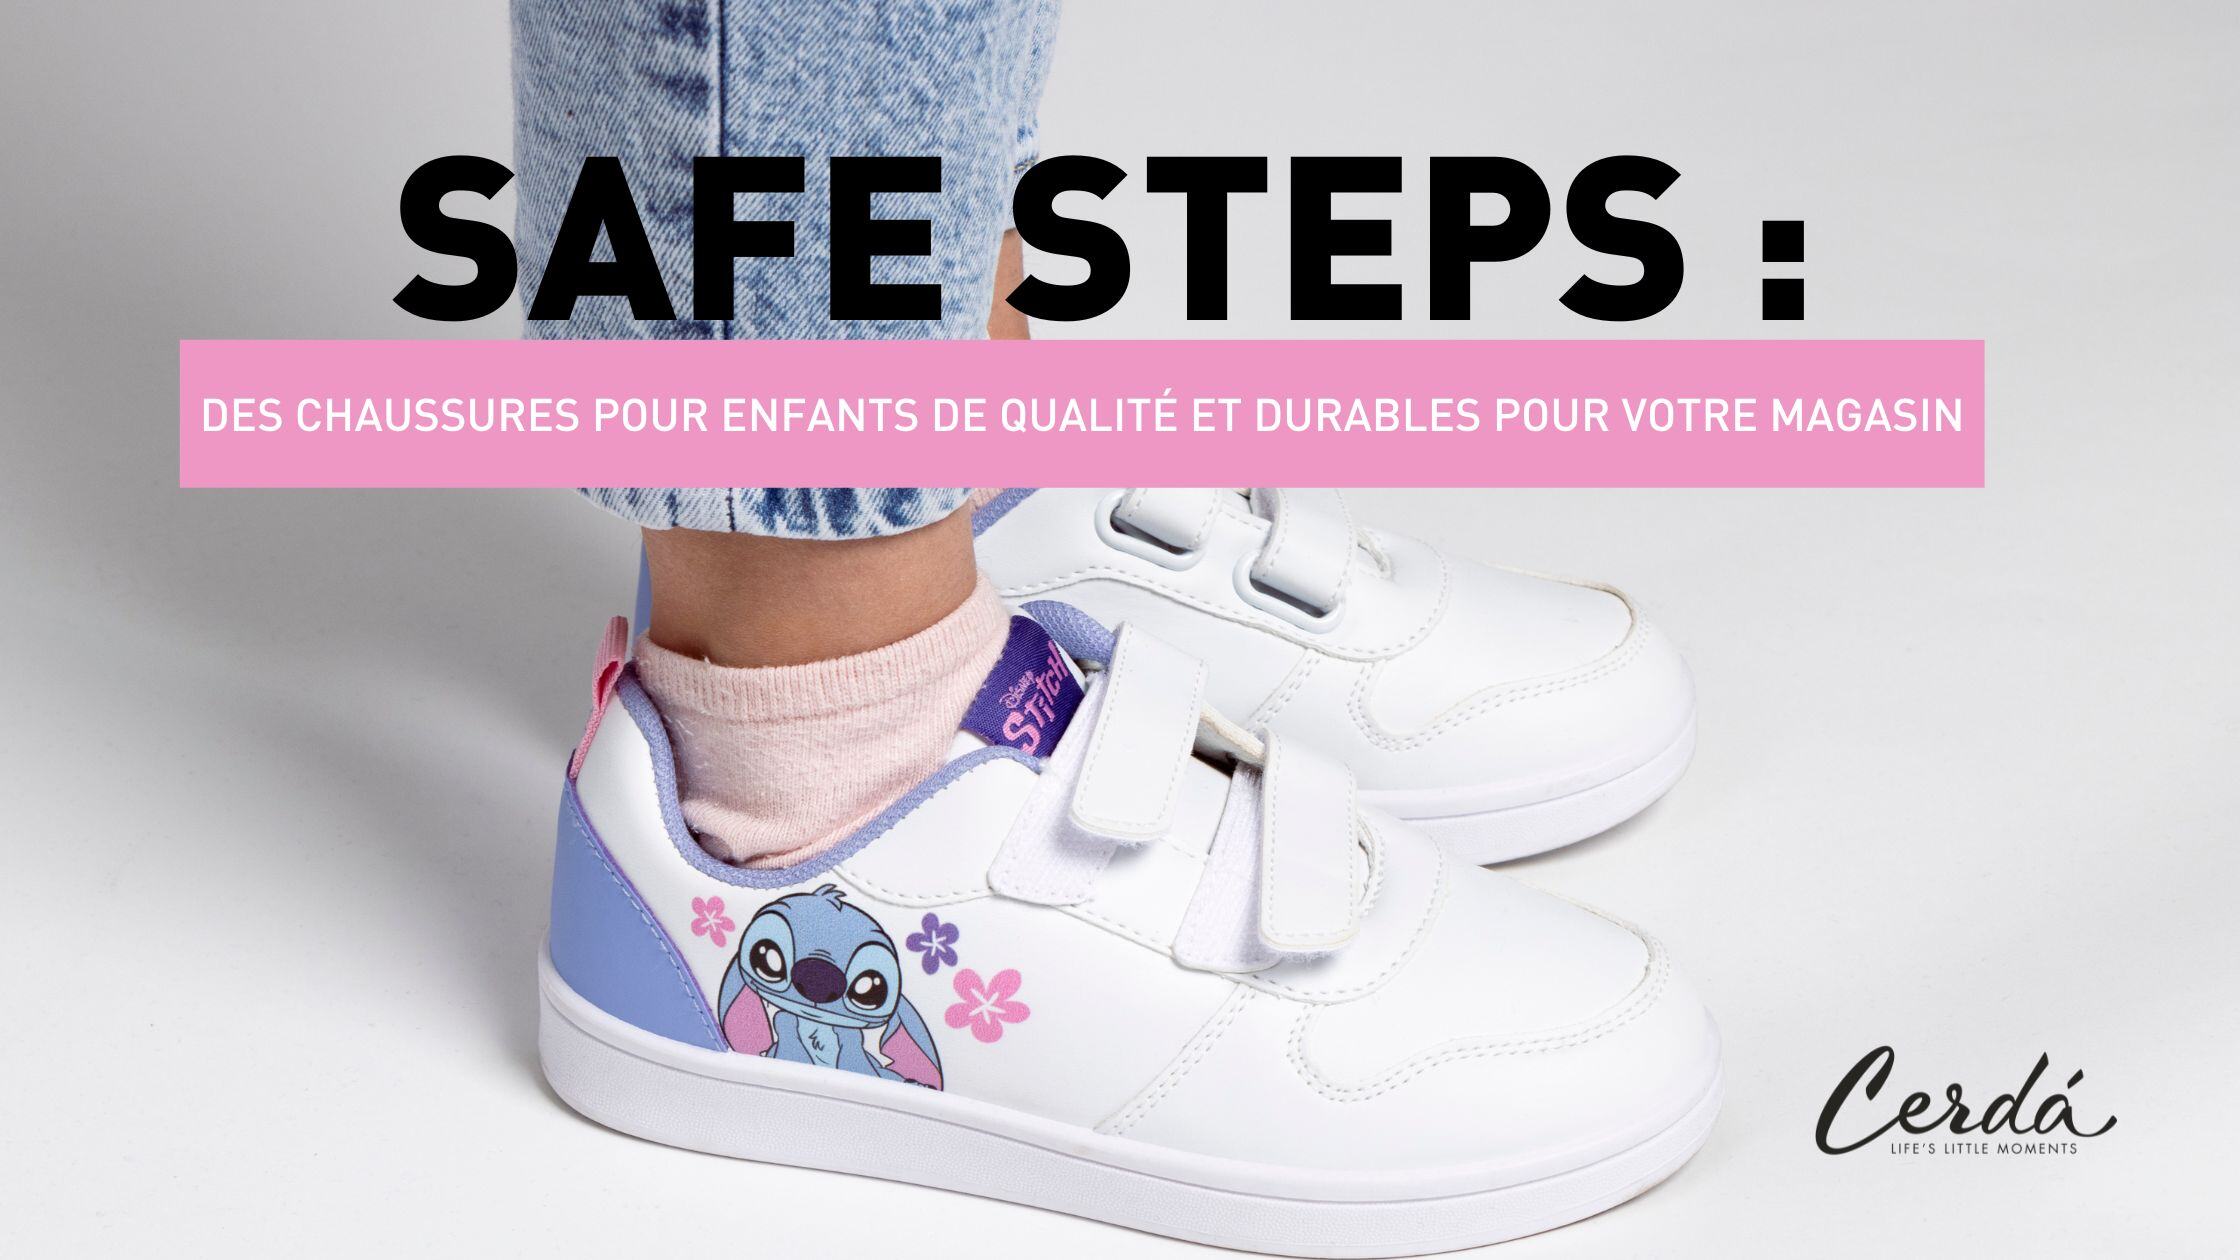 Safe Steps : Des chaussures pour enfants durables et de qualité pour votre magasin